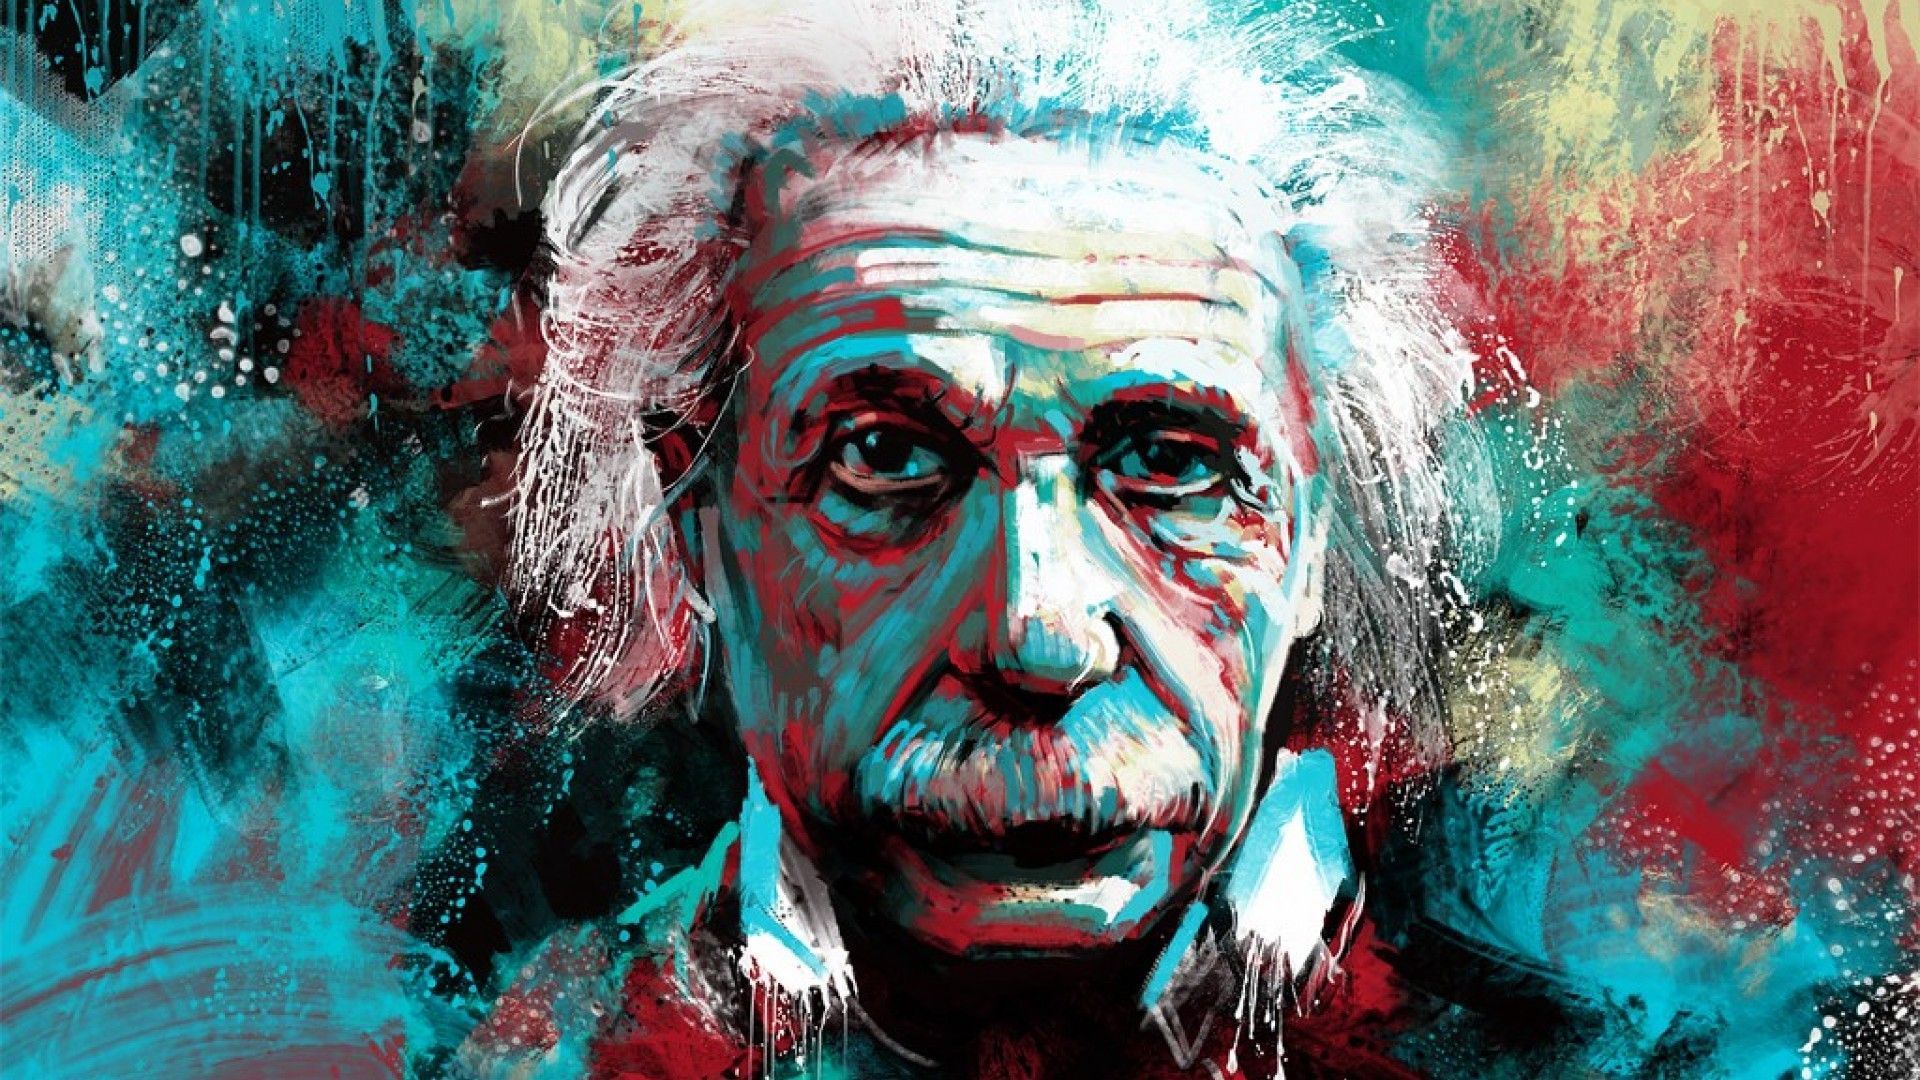  Albert Einstein Hintergrundbild 1920x1080. Albert Einstein Art Wallpaper Free Albert Einstein Art Background